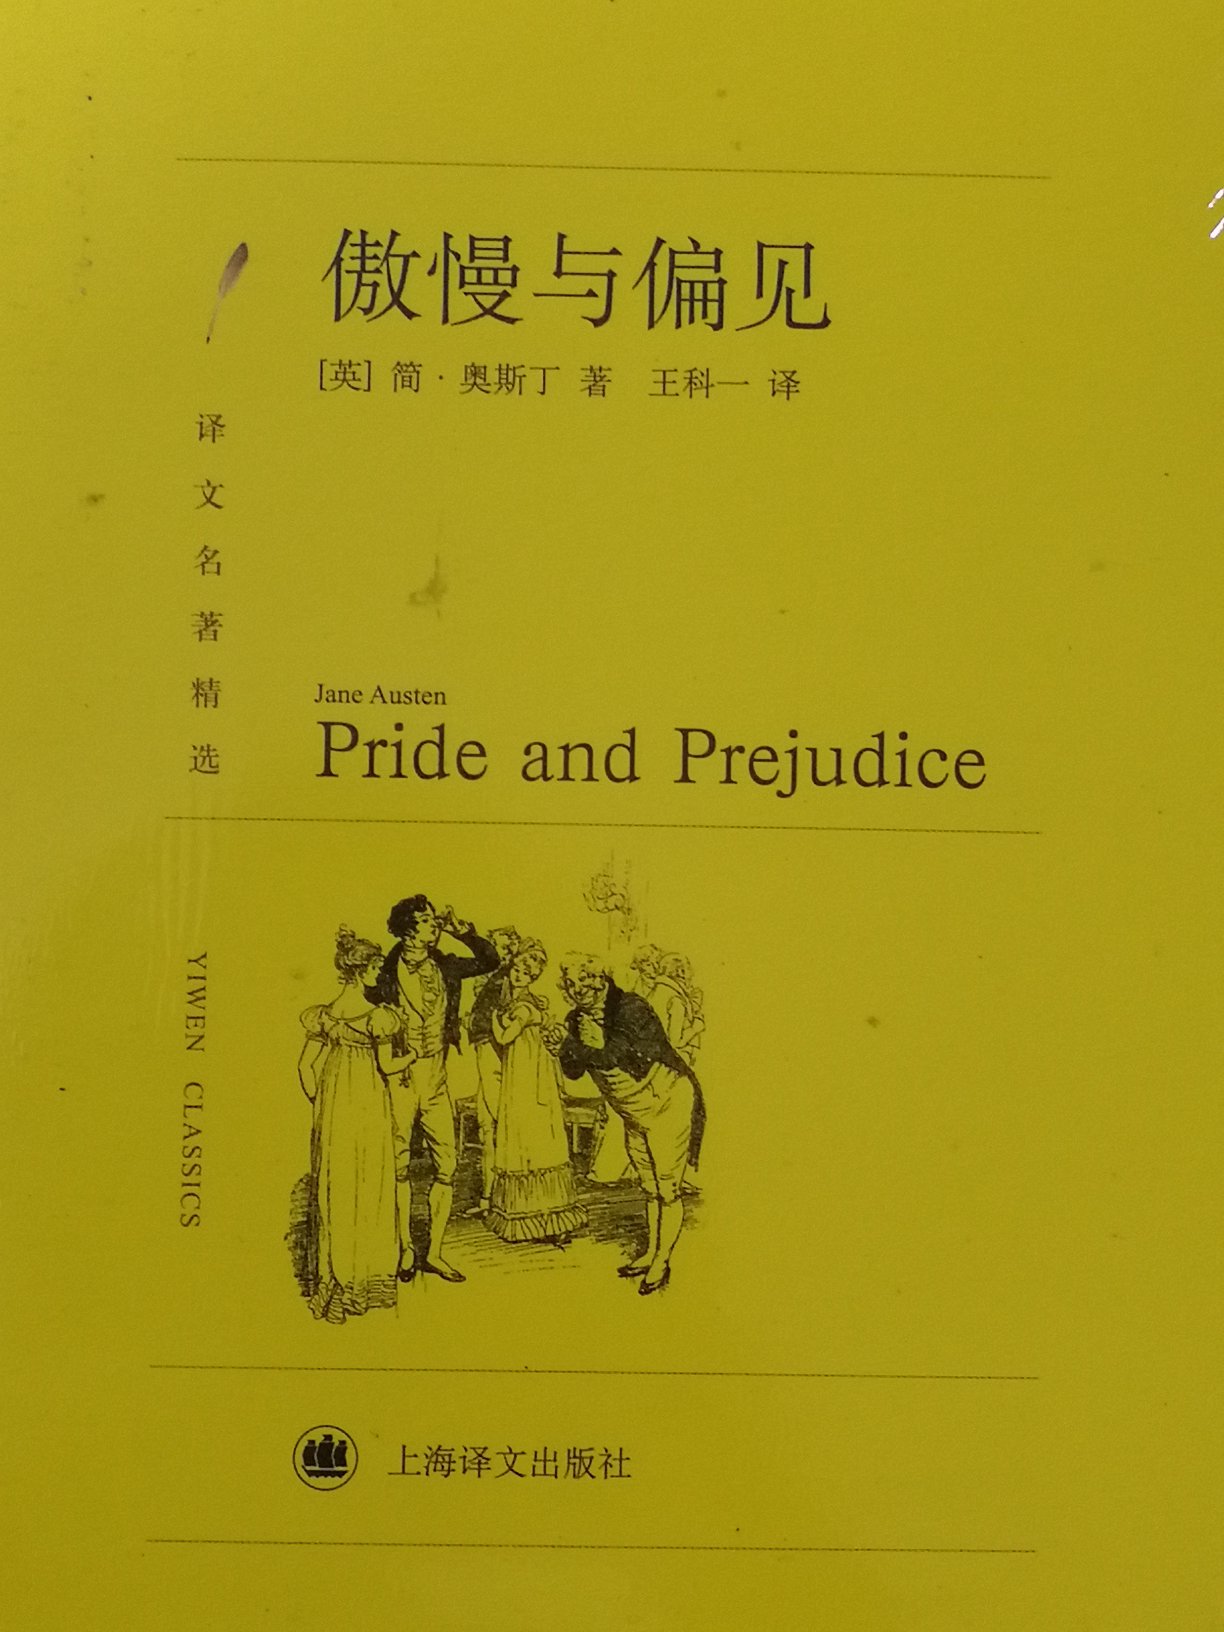 喜欢买上海译文的书，还没拆封，希望印刷内容的质量和排版也好！